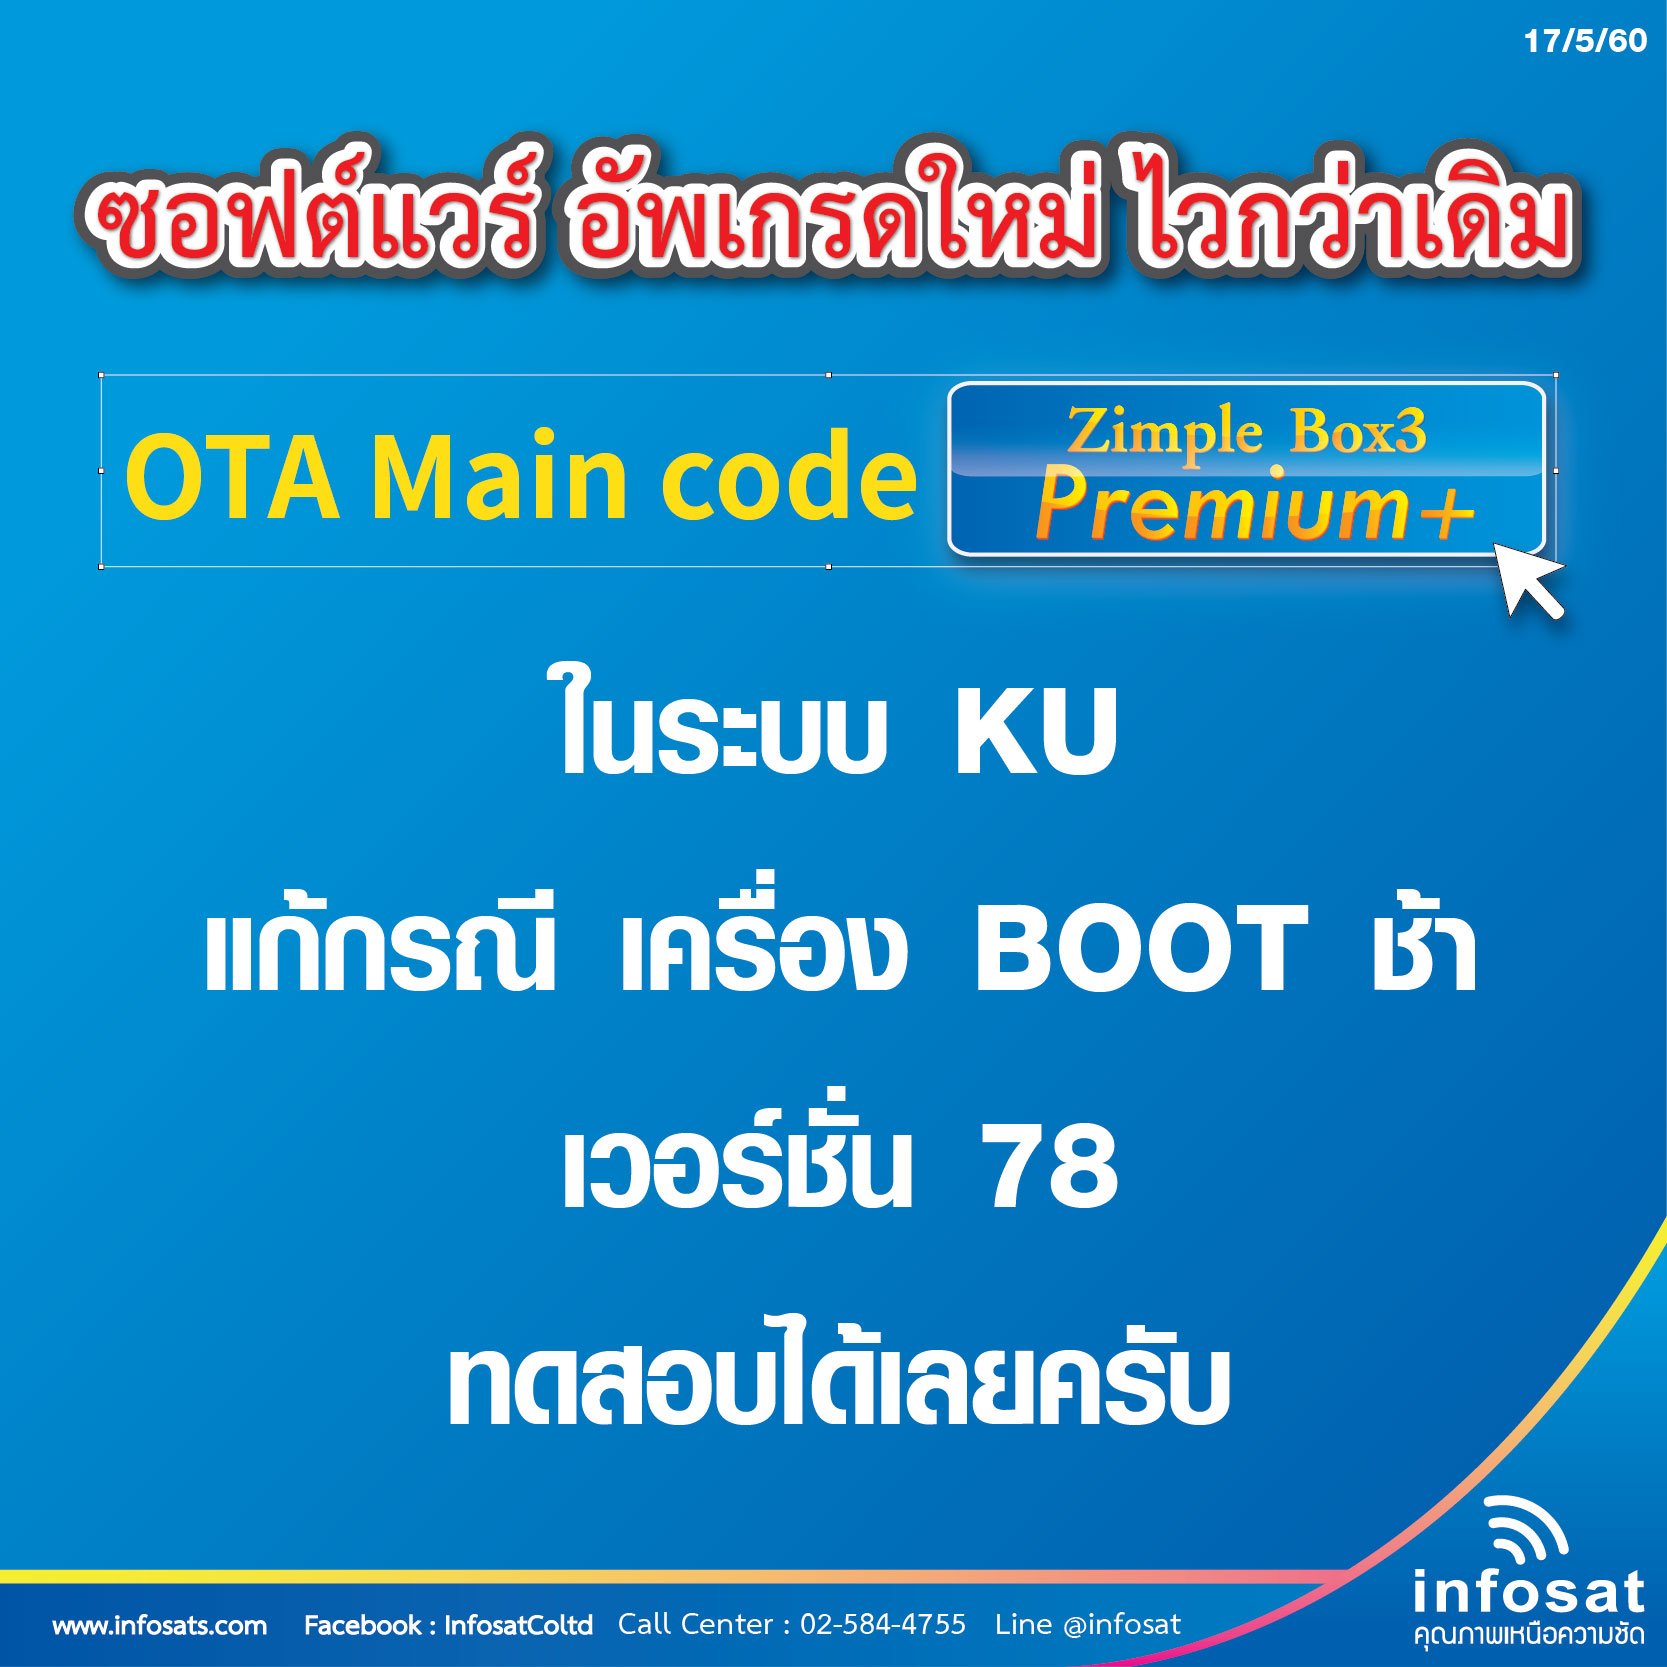 OTA Main Code Zimplebox 3 Premium+ KU-Band